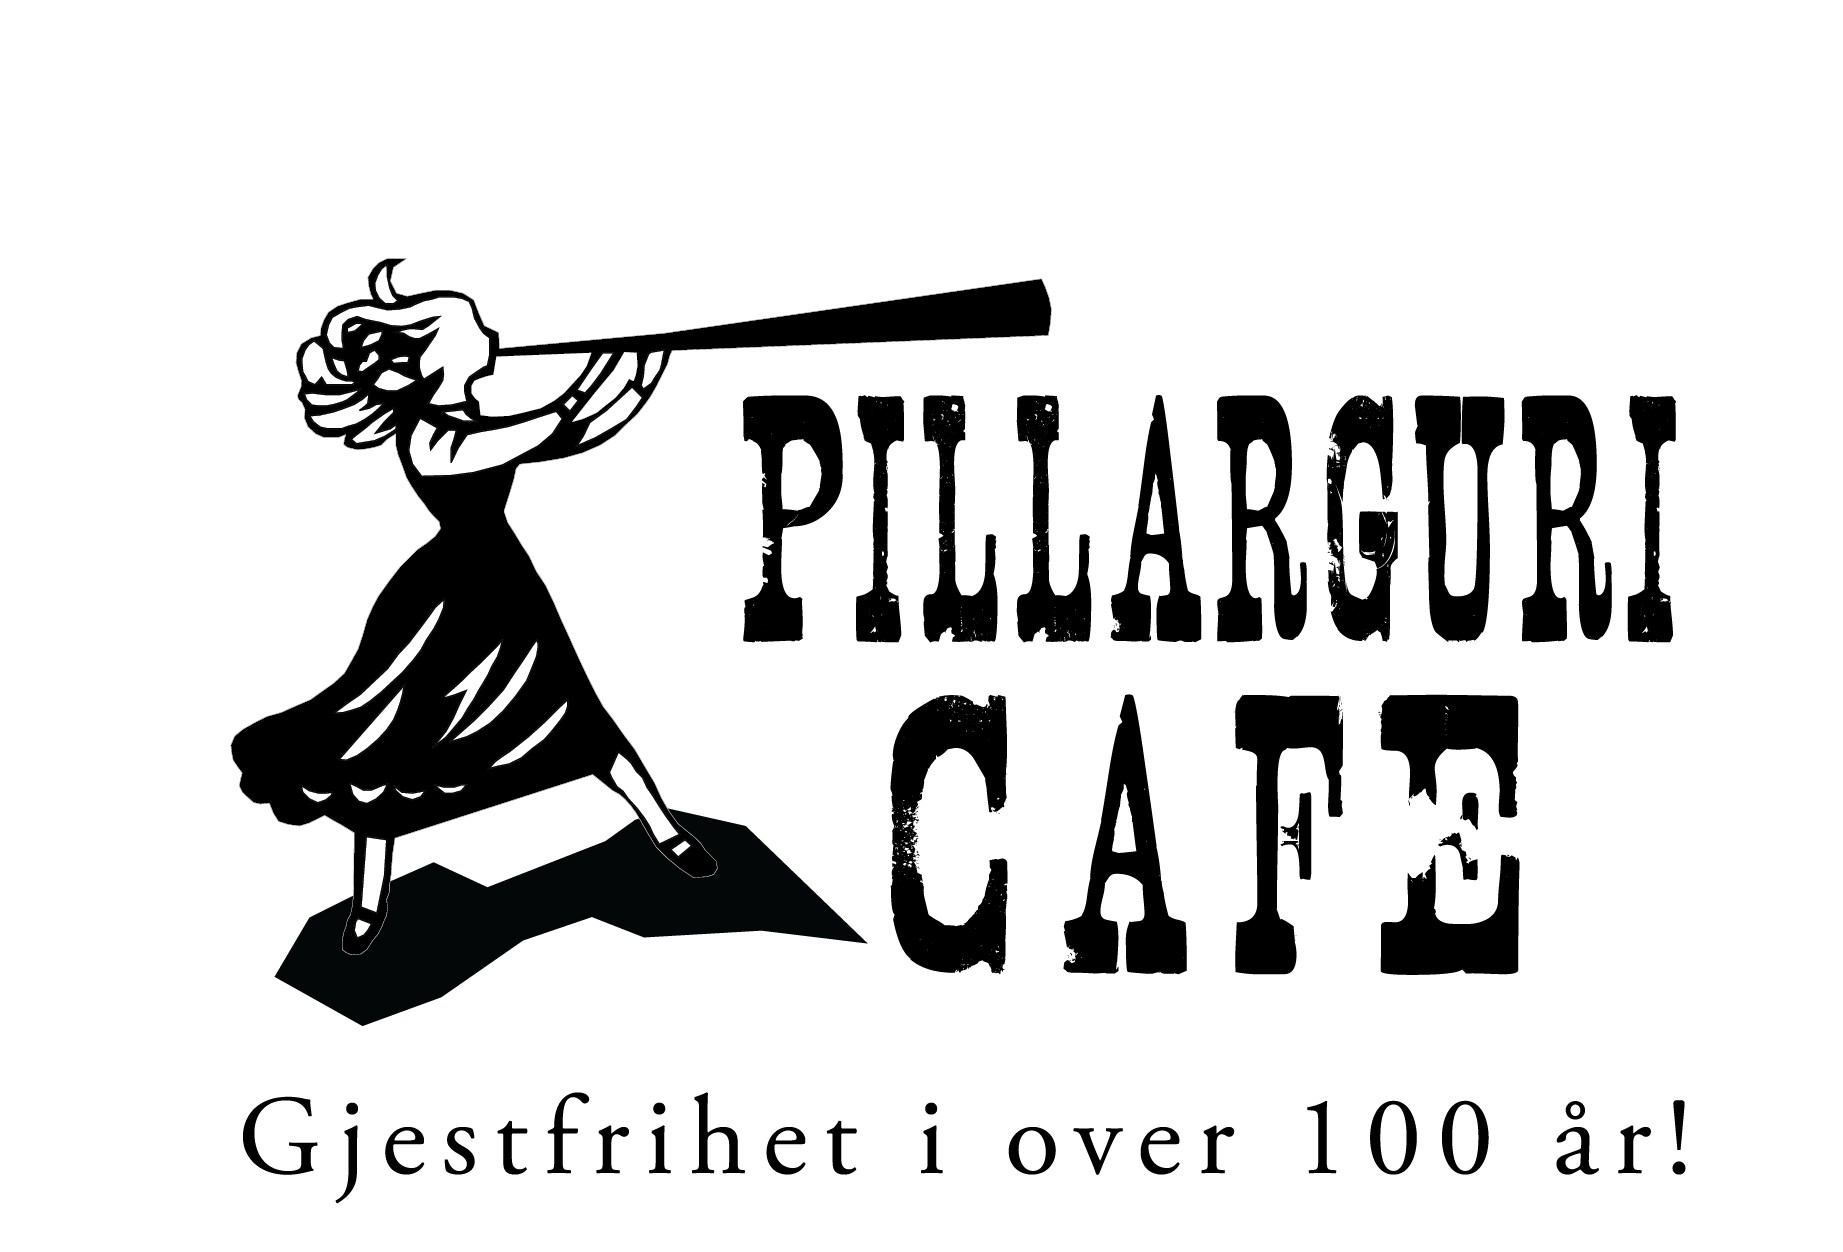 Pillarguri Kafe as logo